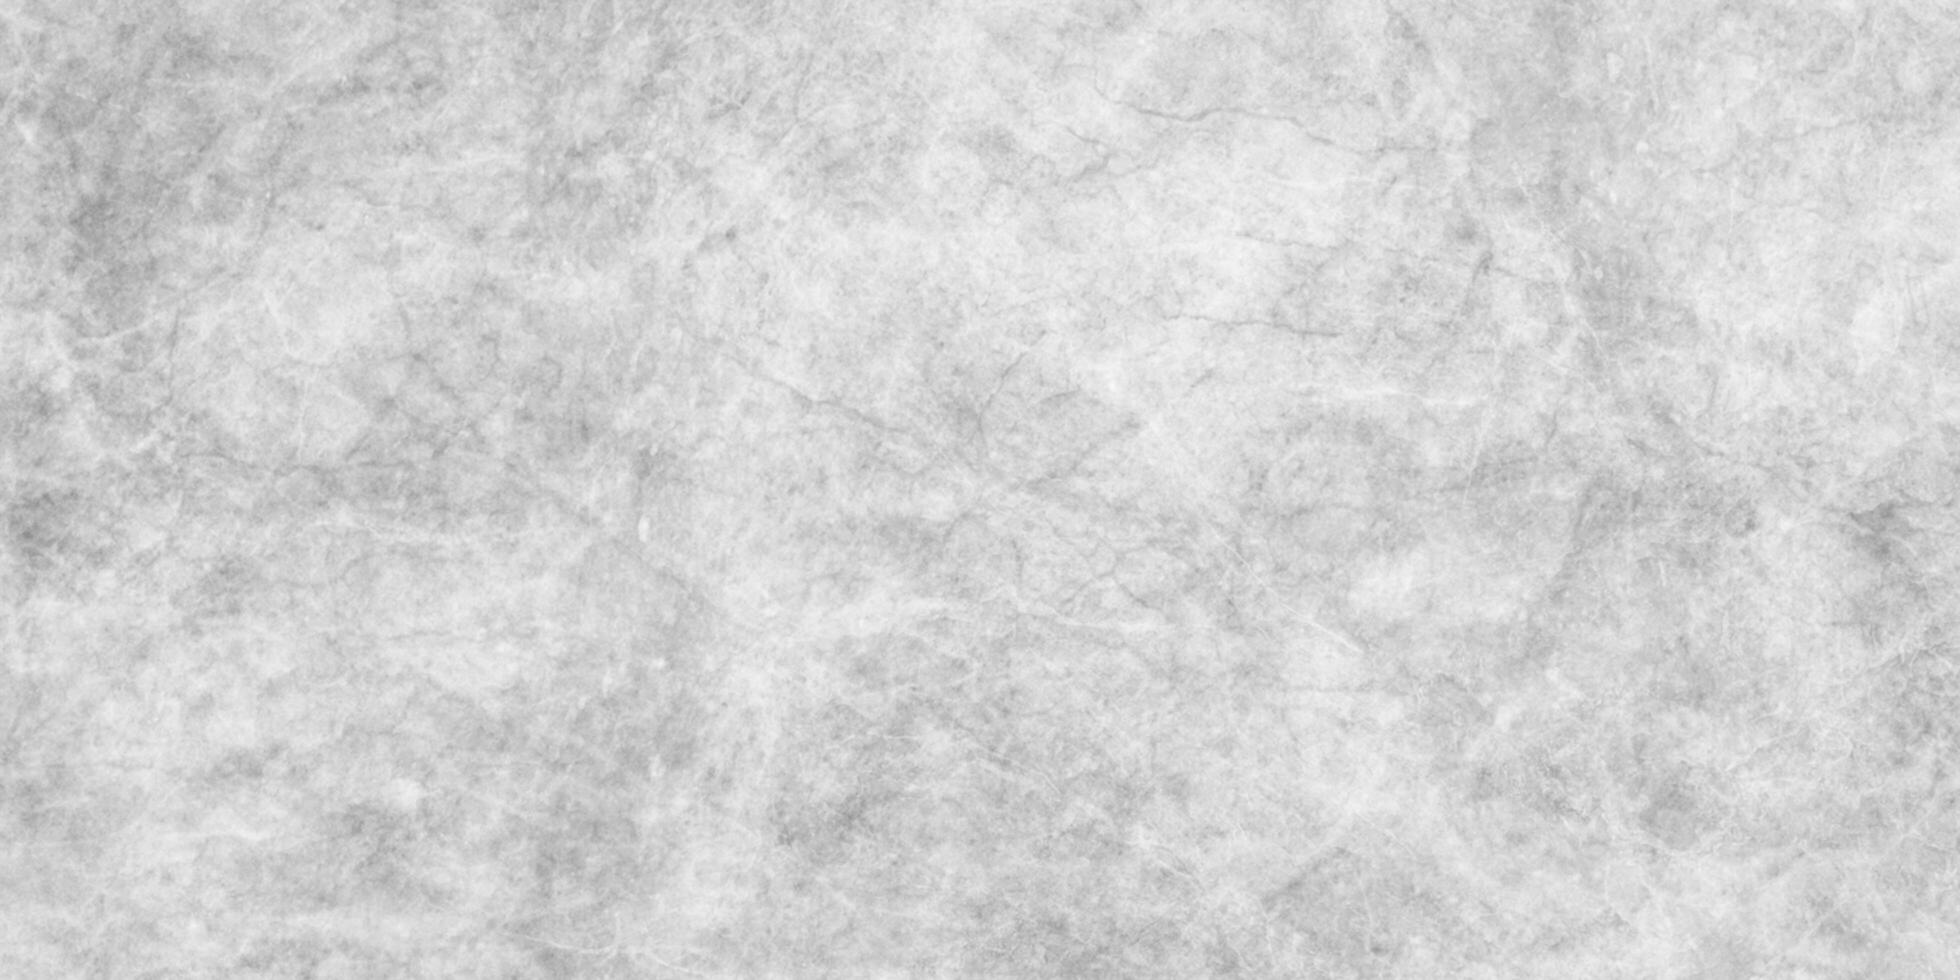 vecchio e grunge marmo pietra struttura, astratto grigio occhiali da sole grunge struttura, lucidato marmo struttura Perfetto per parete, cucina, pavimento e bagno decorazione. foto